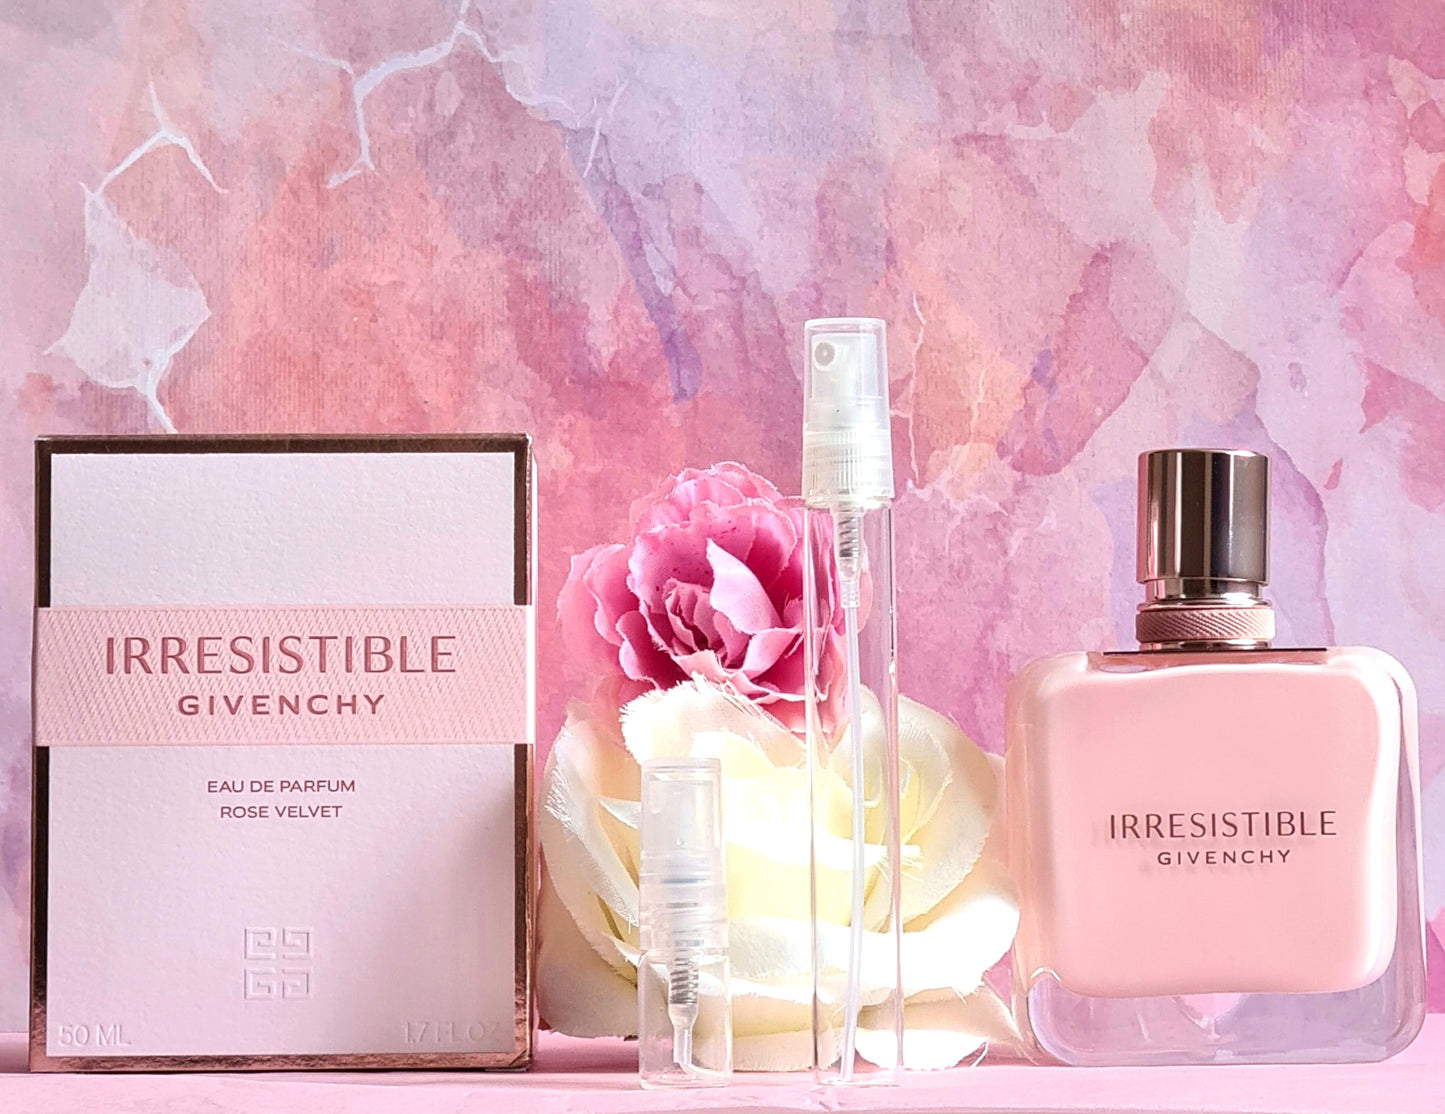 Givenchy Irresistible Eau de Parfum Rose Velvet sample